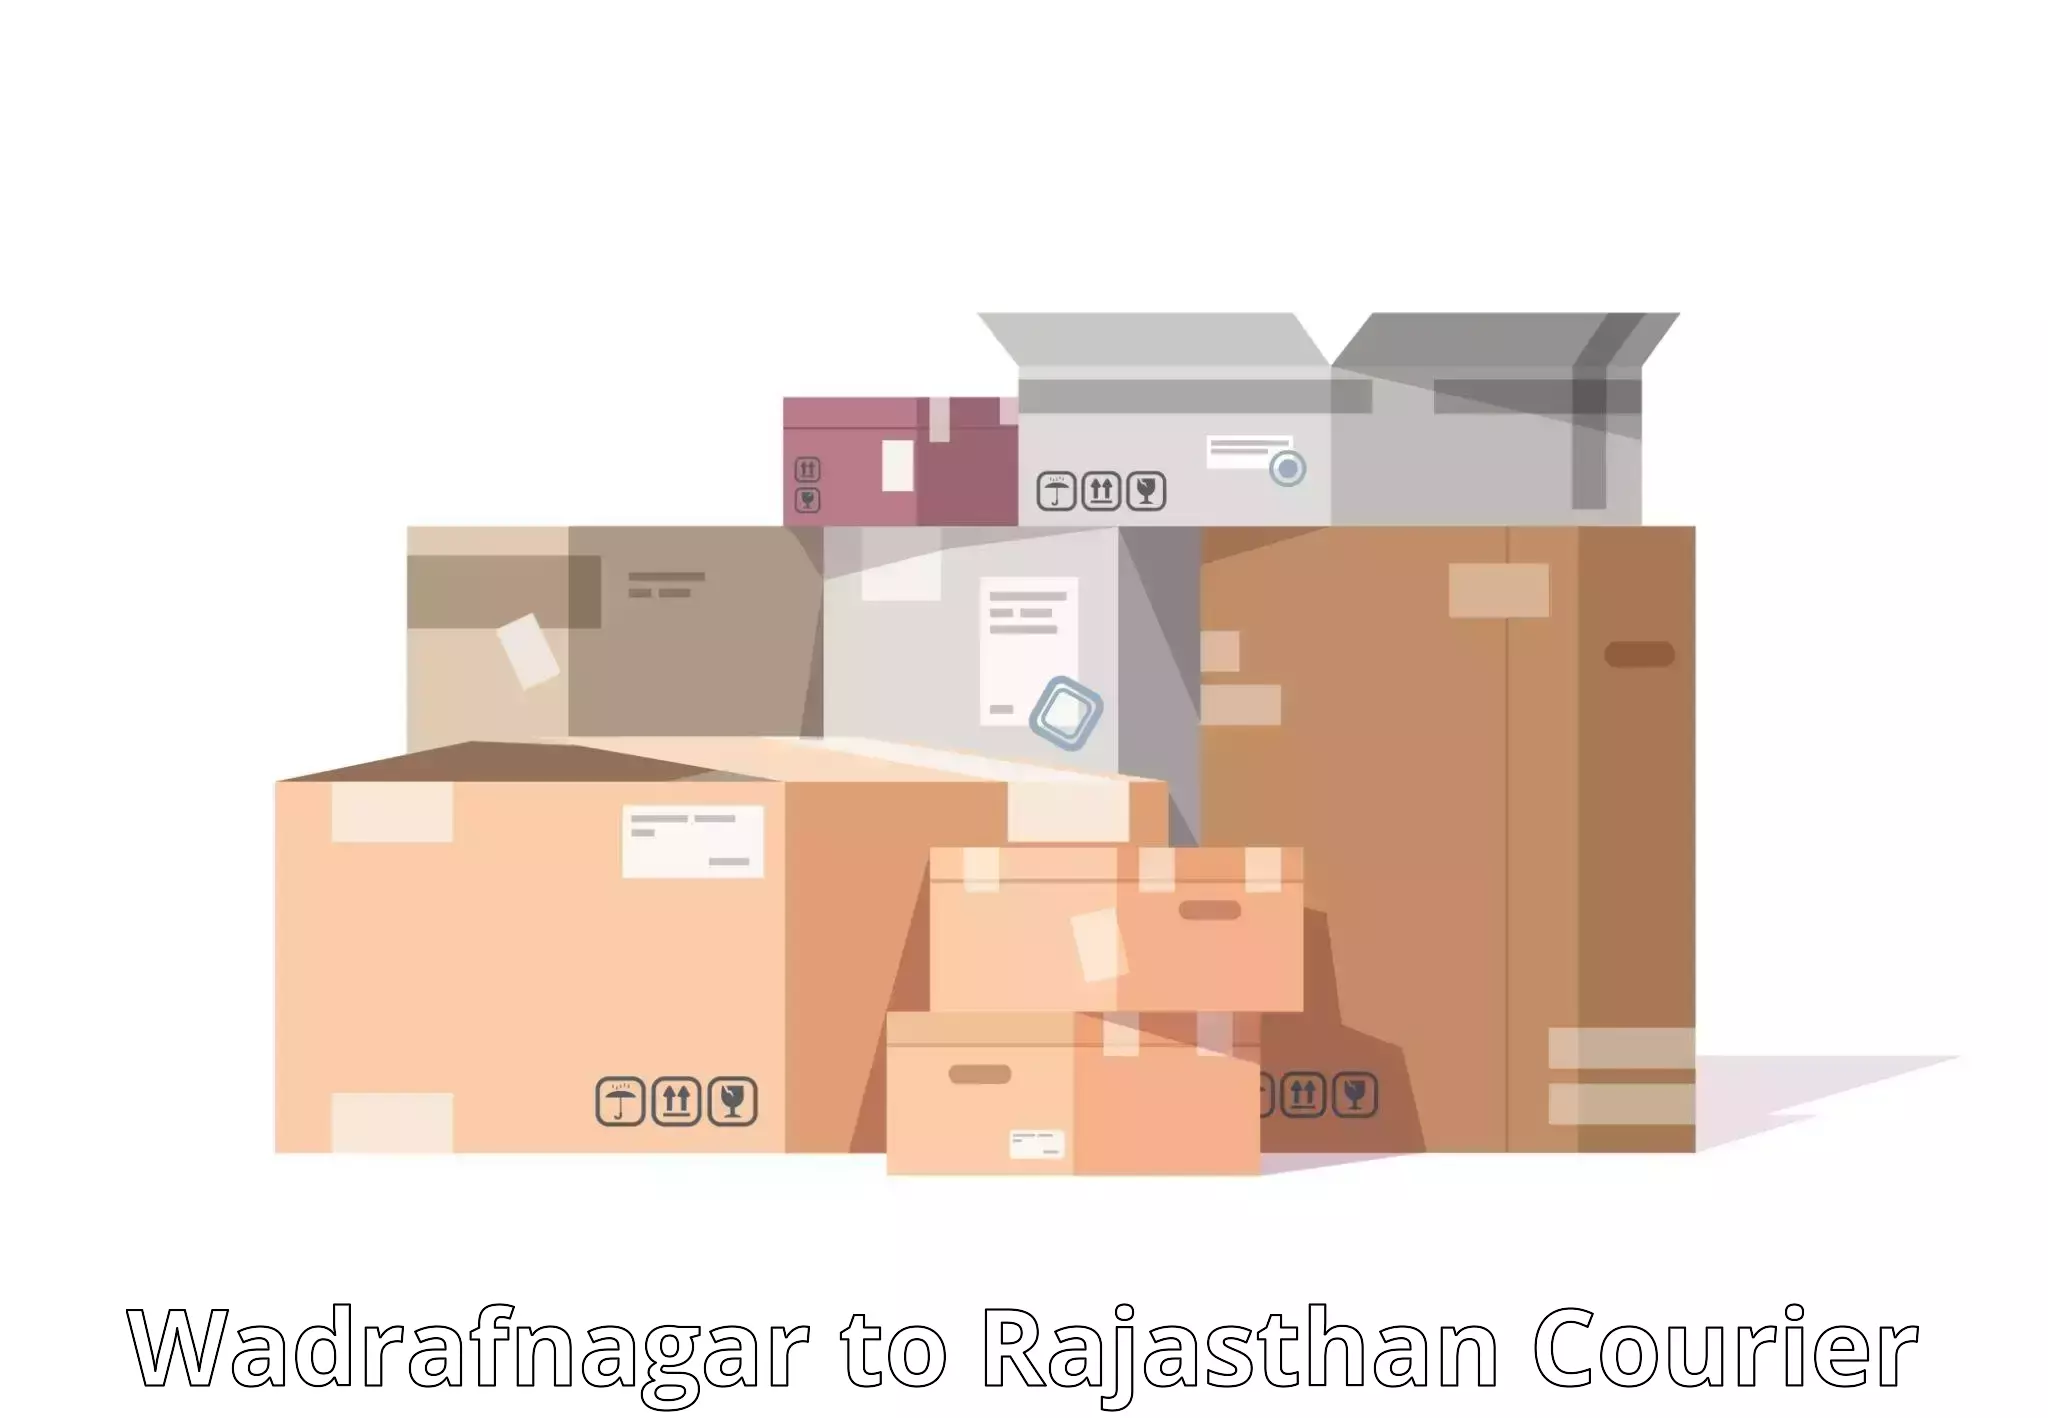 Global shipping solutions Wadrafnagar to Bhatewar